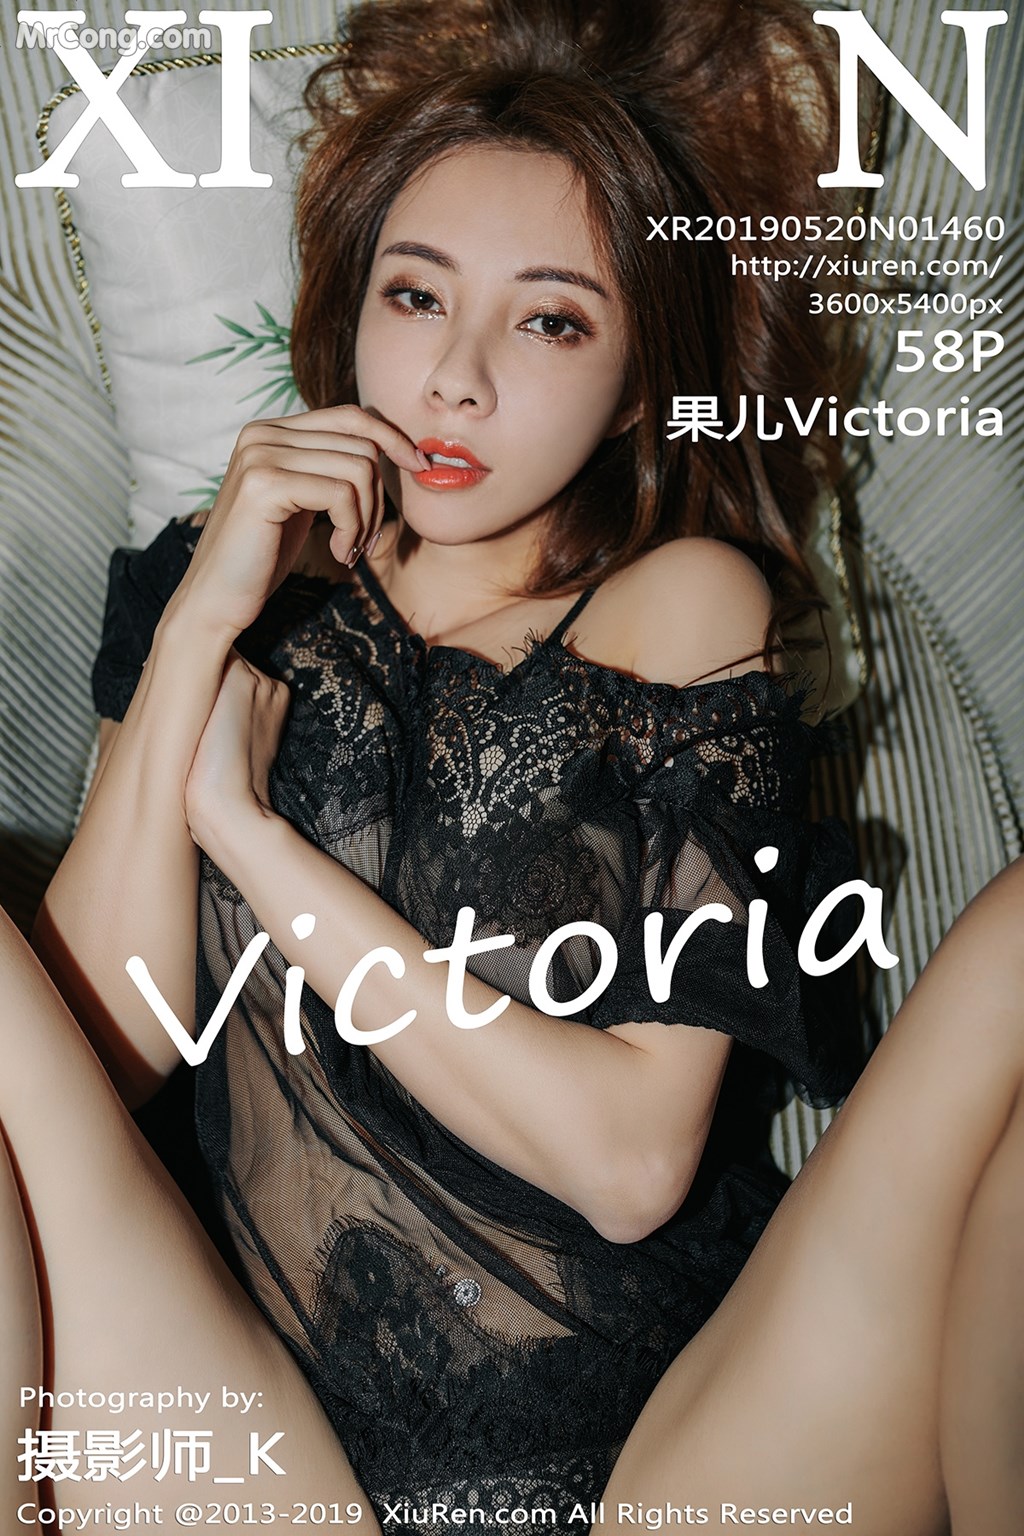 [XIUREN] No.1460 Victoria 果儿 Cover Photo